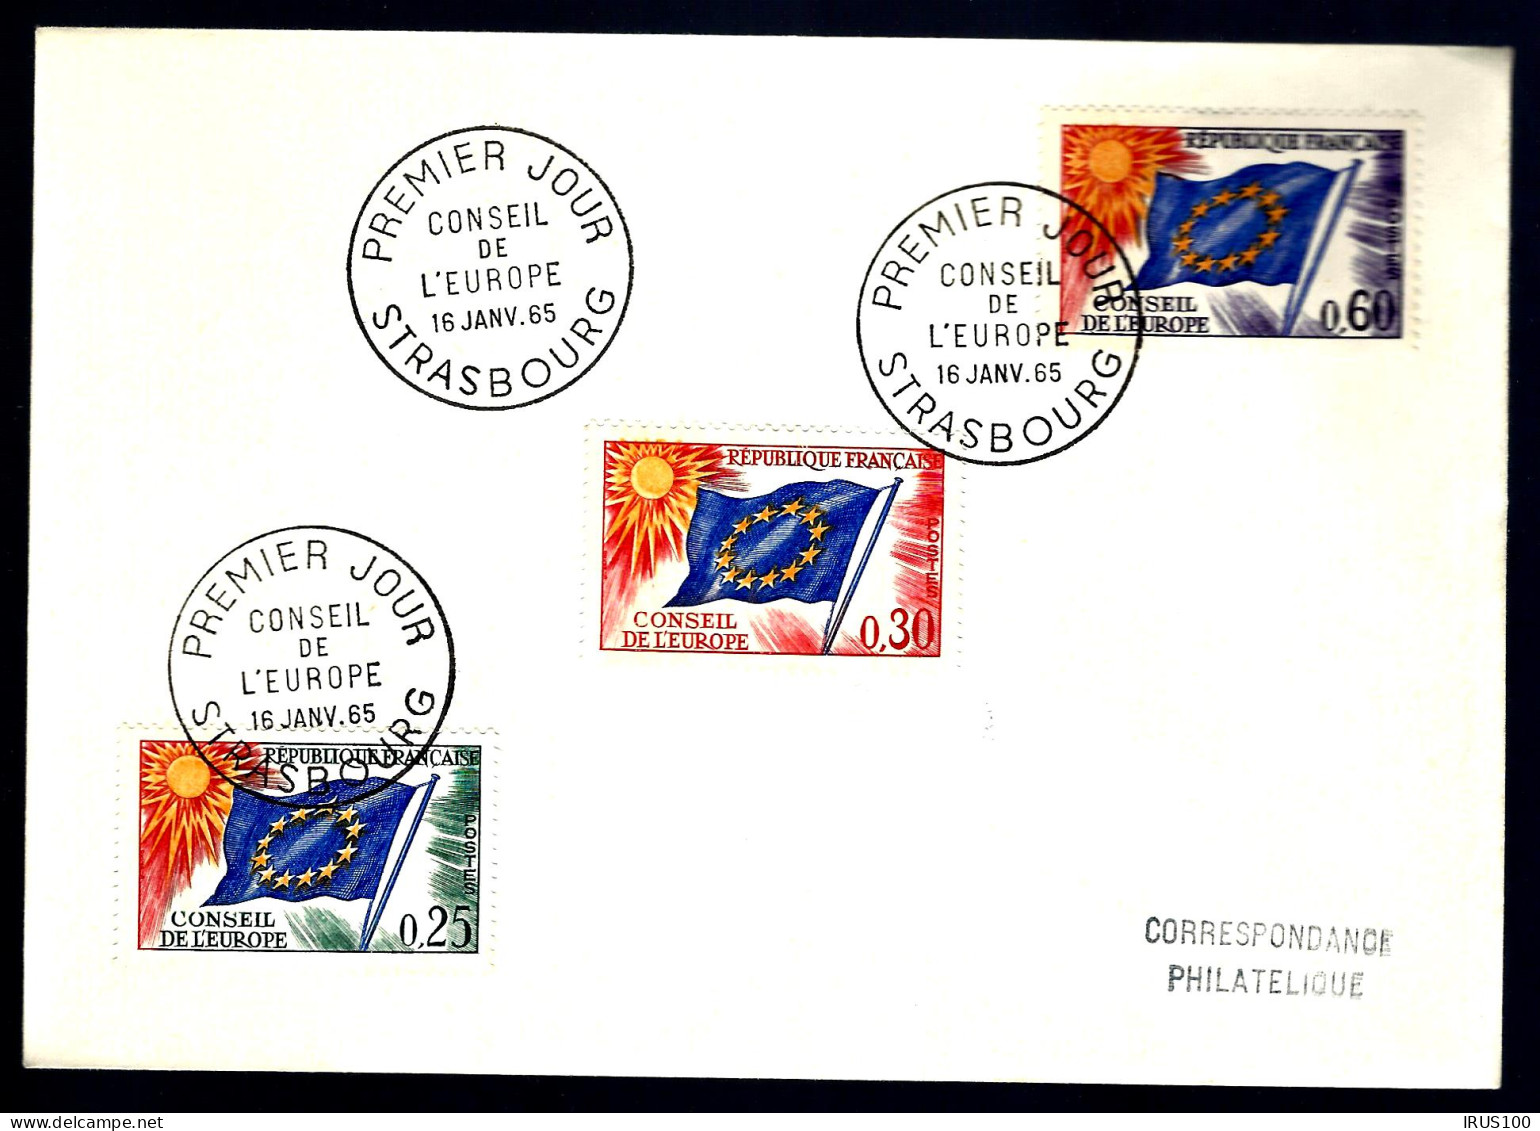 CONSEIL DE L'EUROPE - 16 JANVIER 1965 - STRASBOURG - Covers & Documents